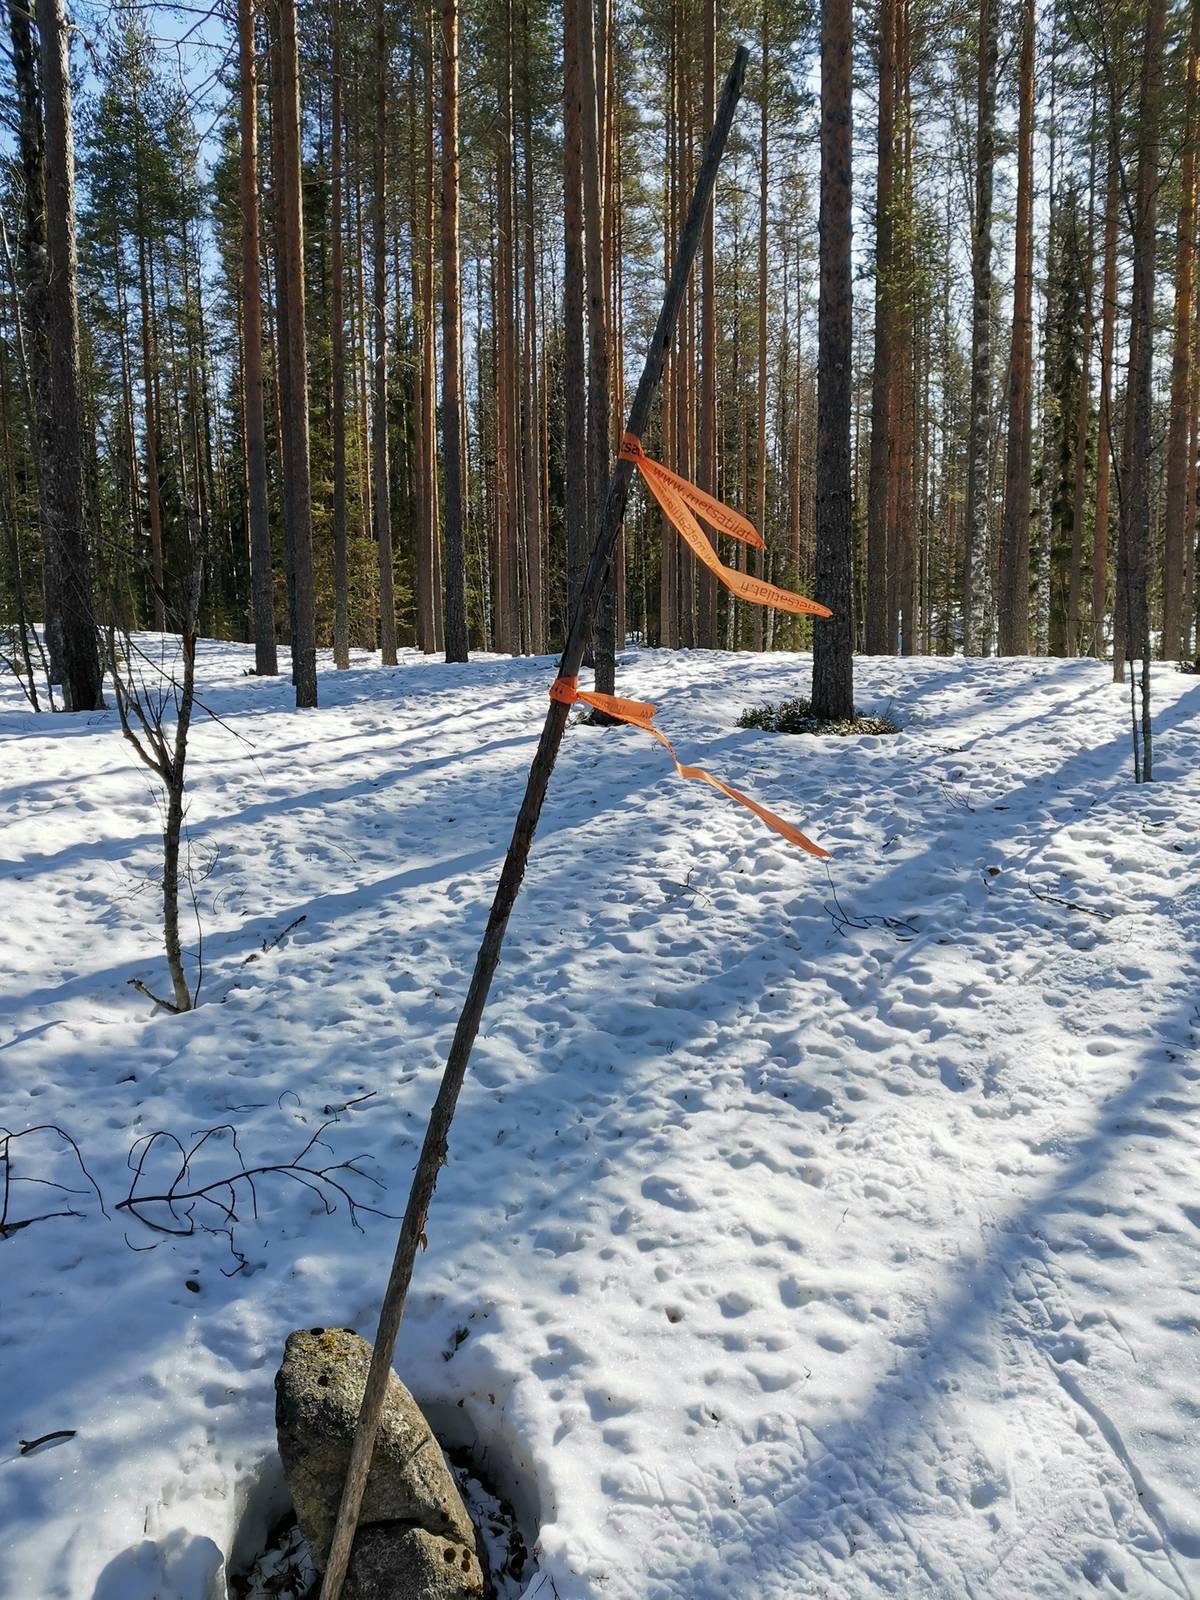 Omslagsbild för objektet MÄENPÄÄ II 911-403-2-7, Halmejärvi